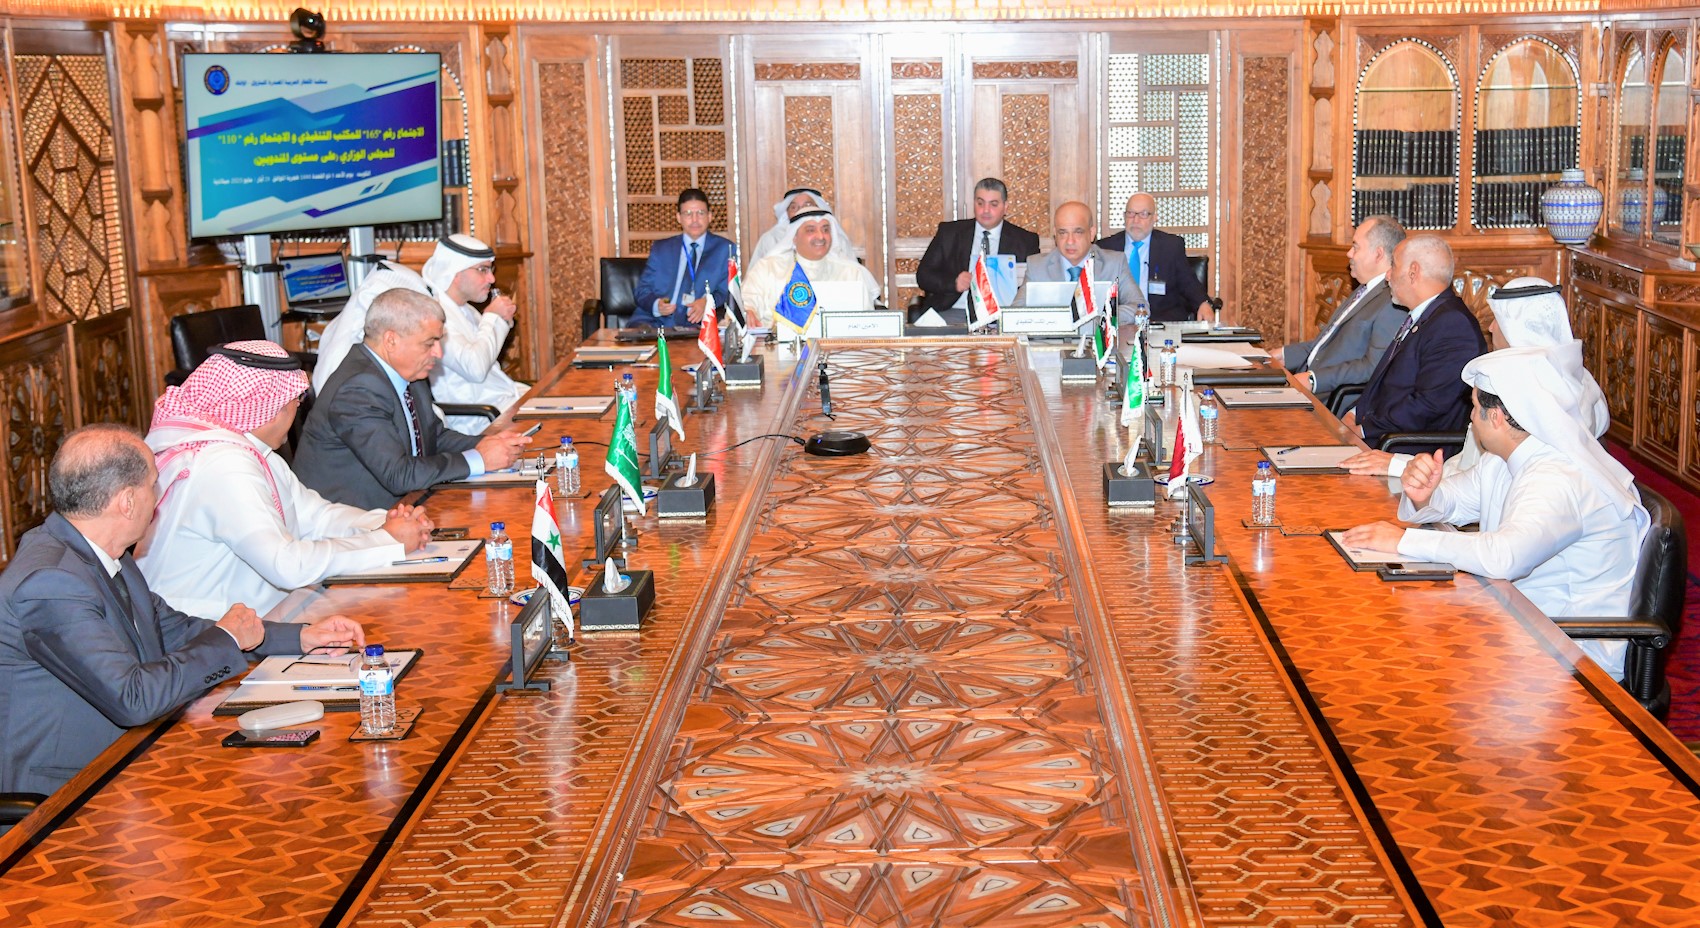 Les dirigeants de l'OPAEP en réunion au Koweït.